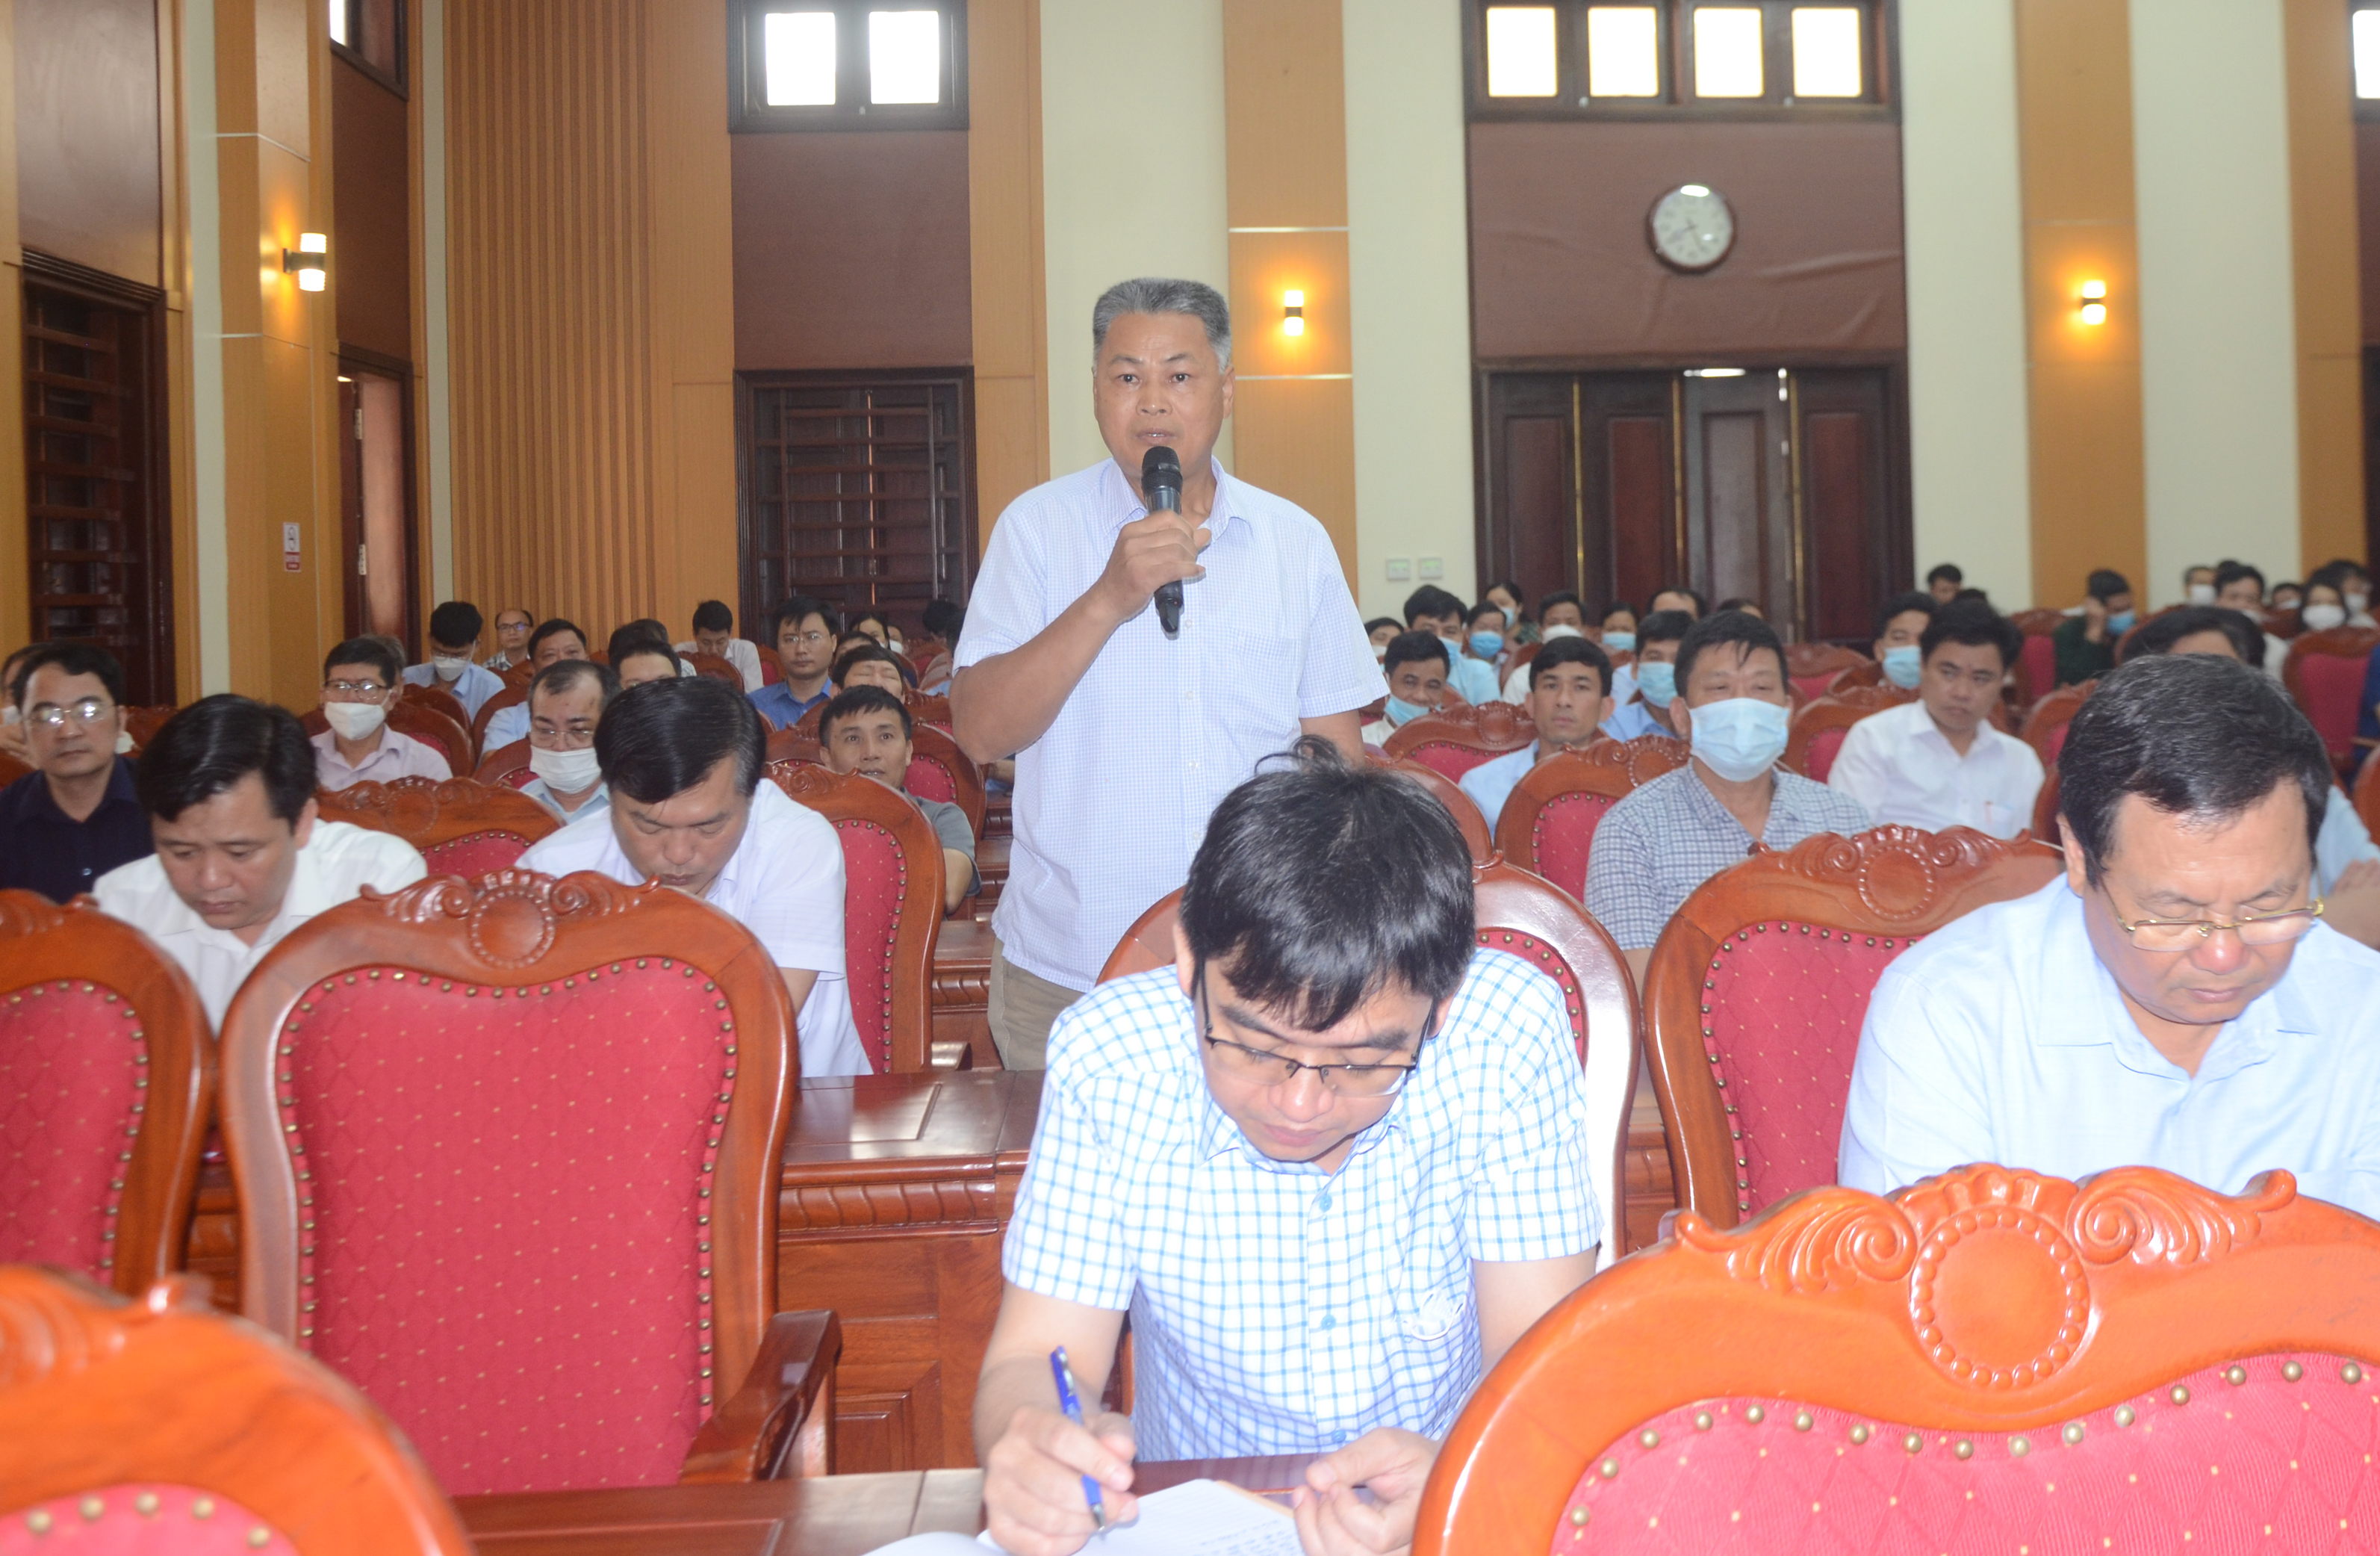 Đại diện cử tri huyện Kim Bảng trình bày ý kiến kiến nghị trước đoàn đại biểu Quốc hội tỉnh.jpg